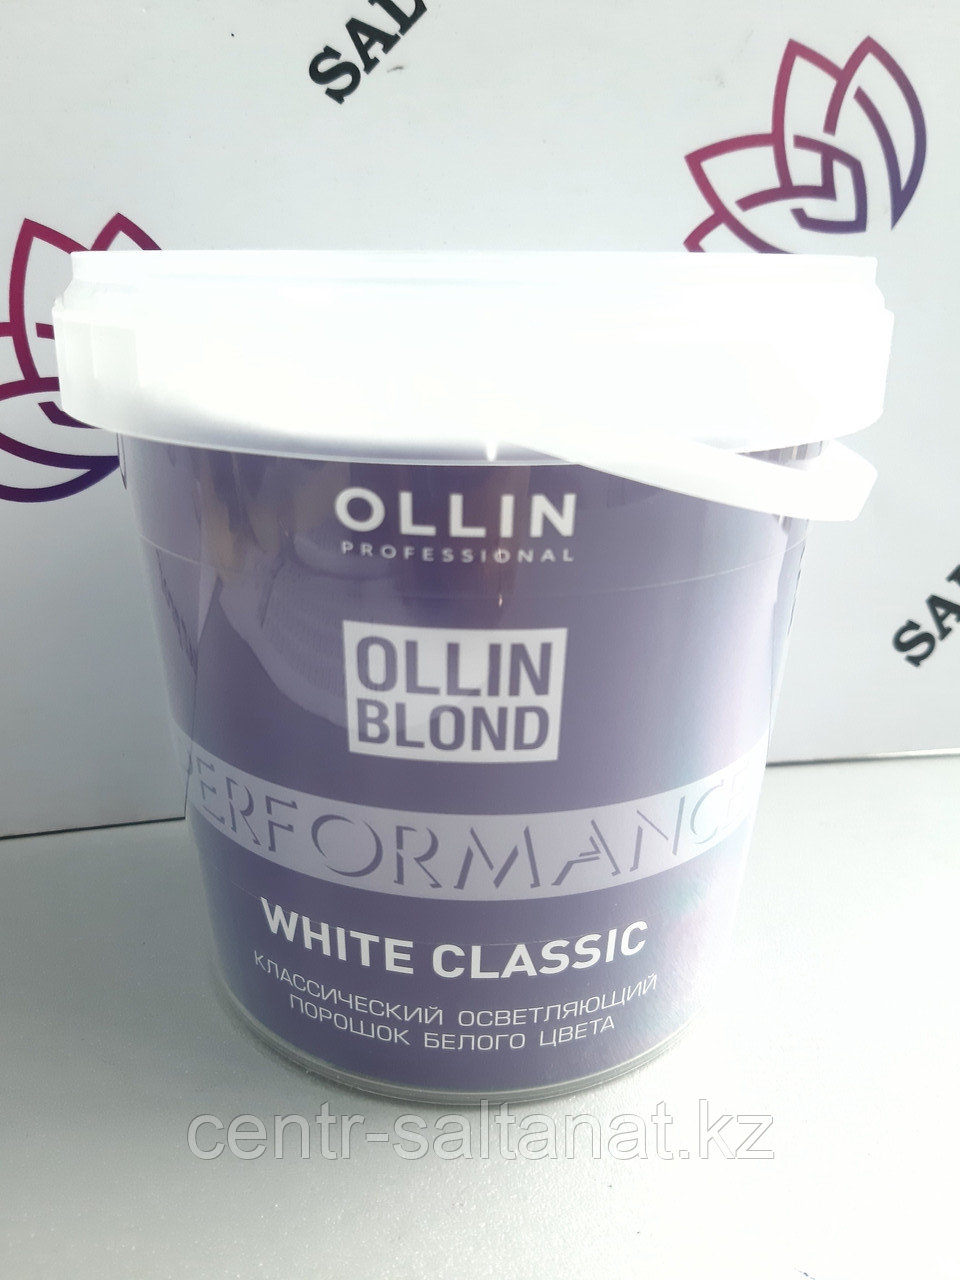 Осветляющий порошок классический белого цвета 500 г Ollin